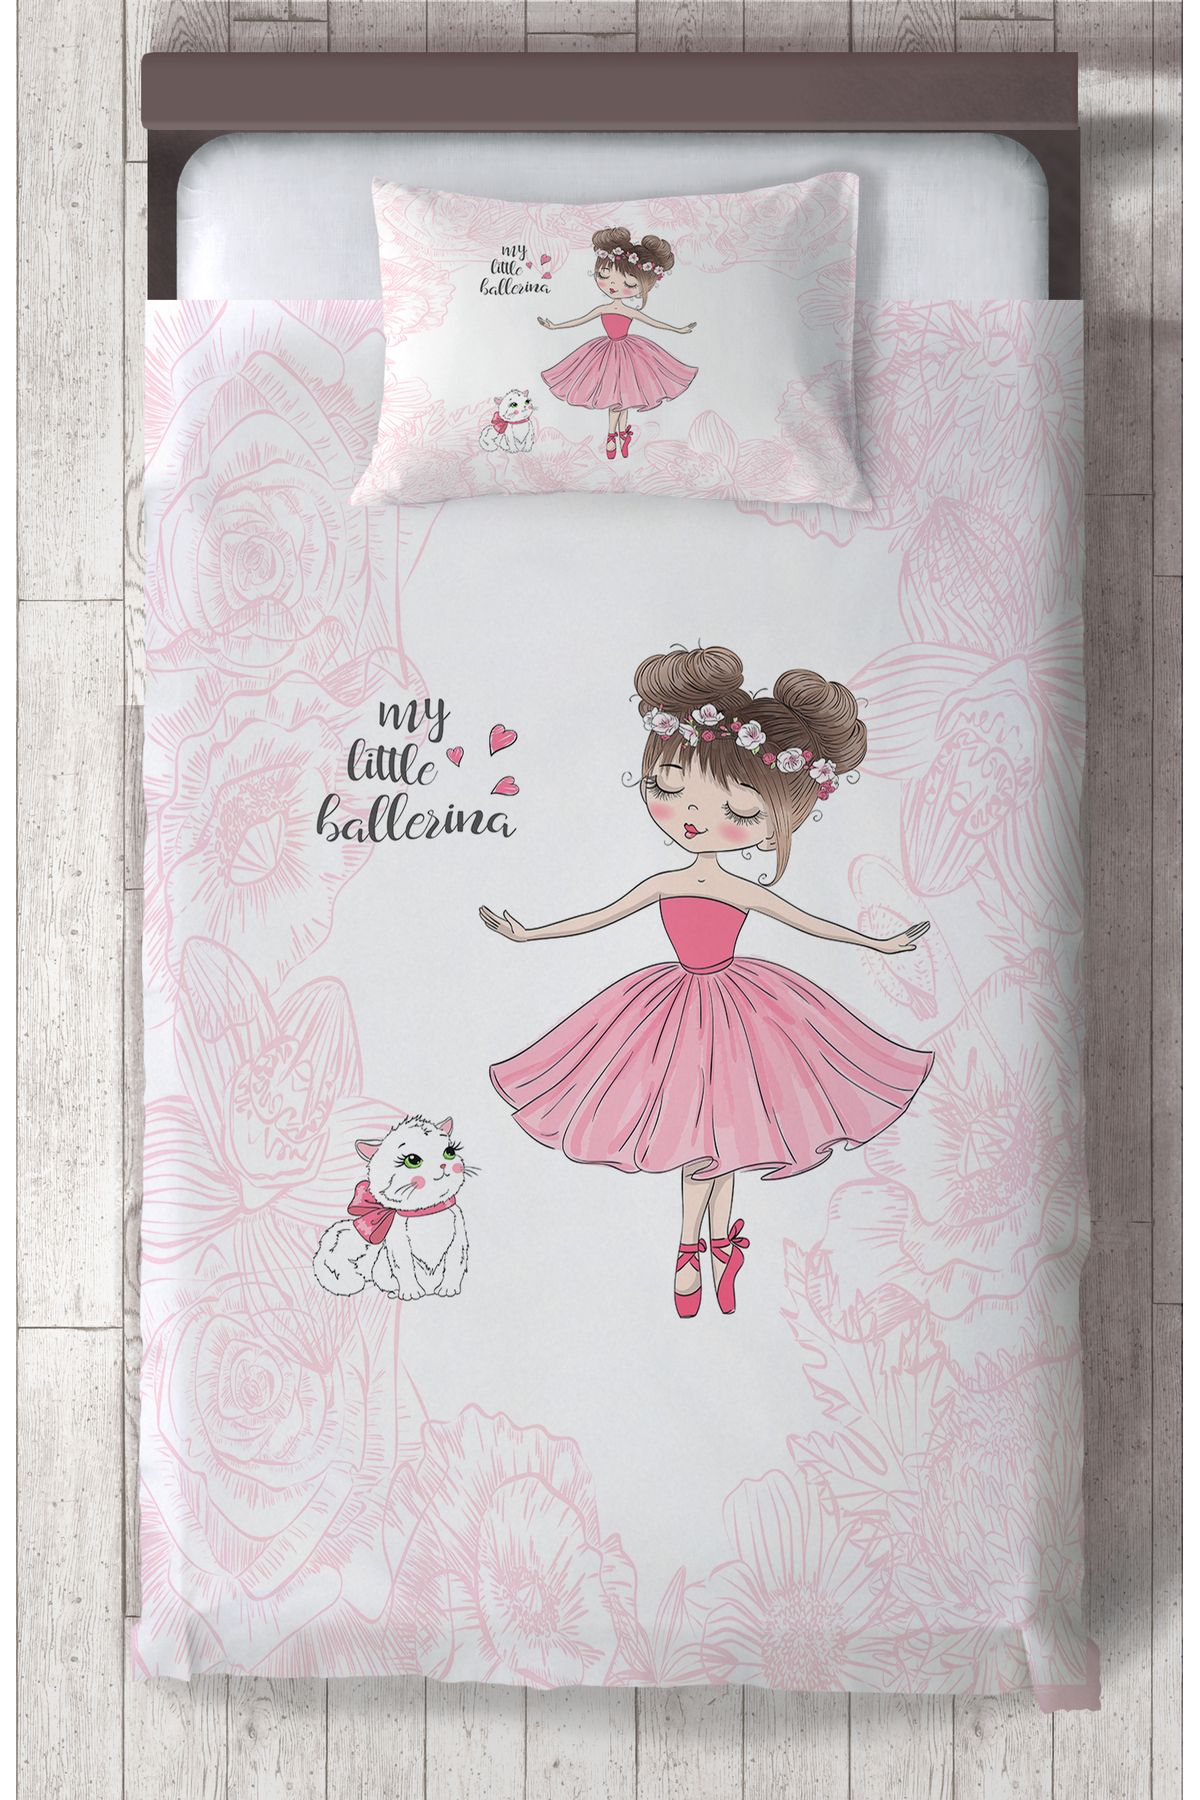 LİDERHOME LİDER HOME BEBEK VE ÇOCUK ODASI Balerin Kız ve Kedi Desenli Motifli Yatak Örtüsü